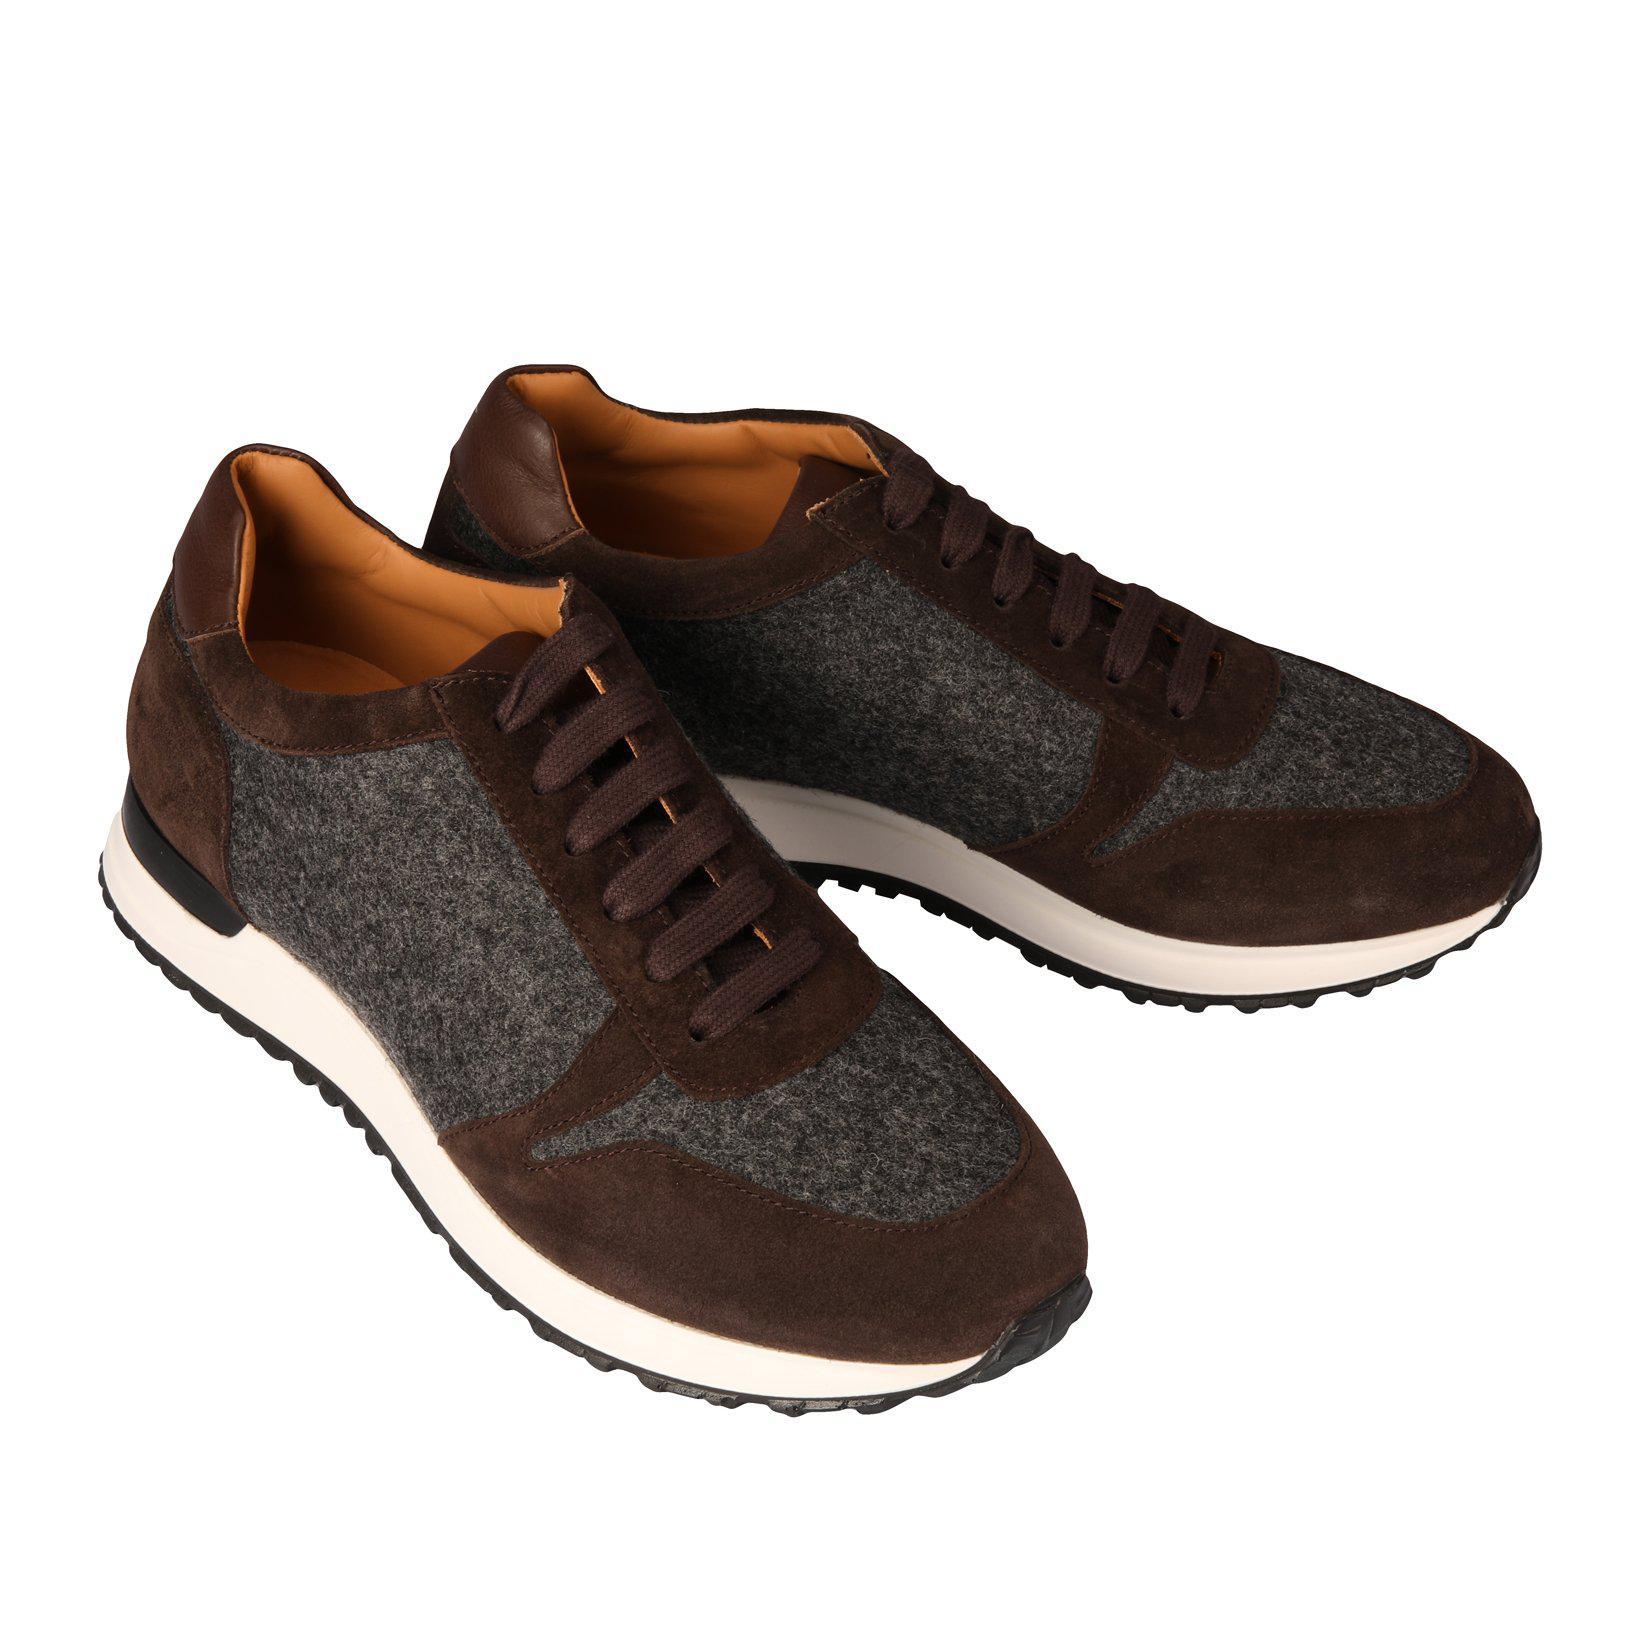 Sneaker Max-Monaco Duck-Conrad Hasselbach Shoes & Garment